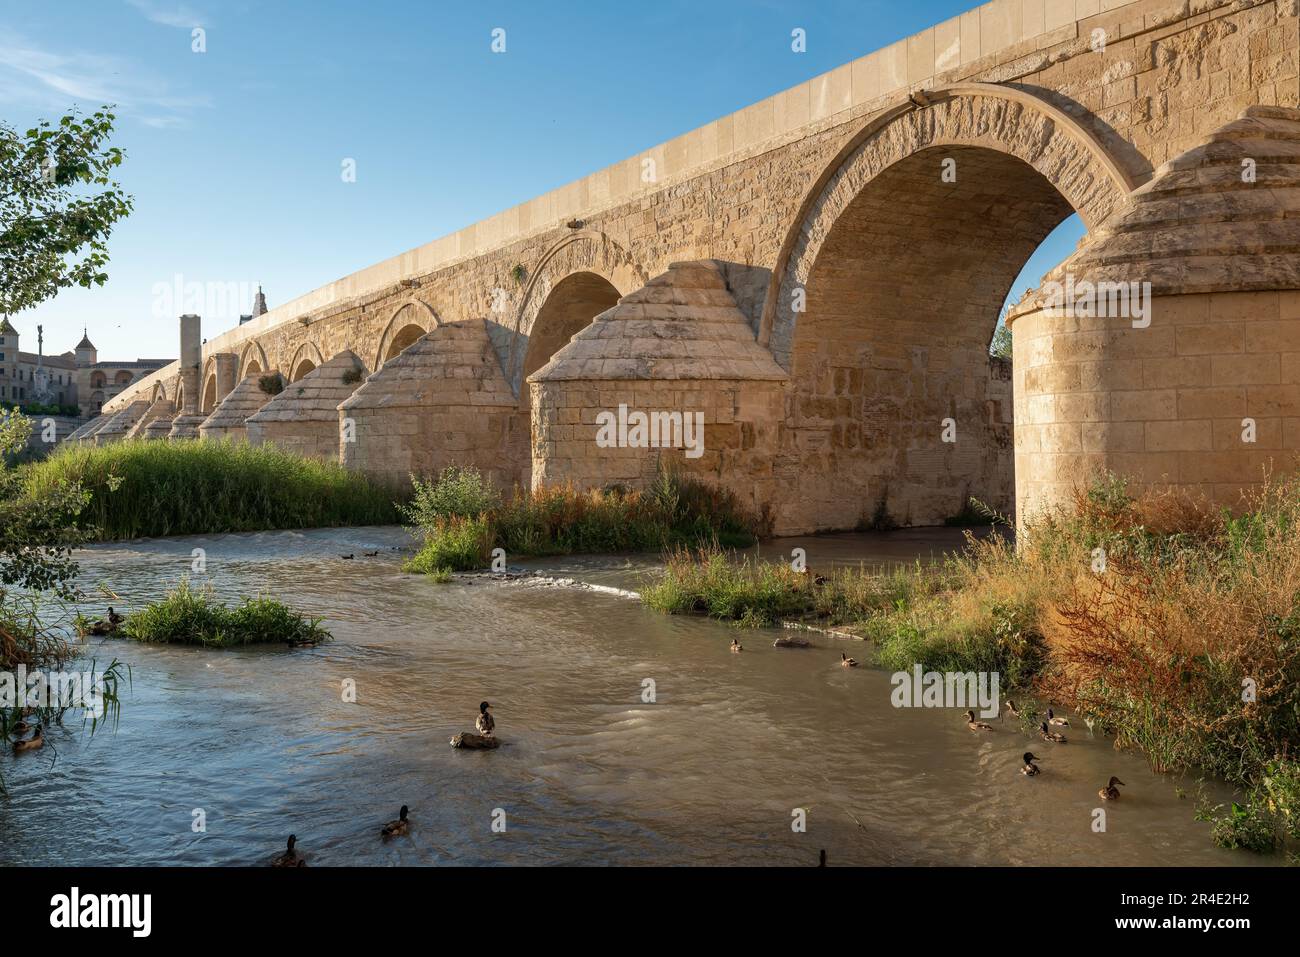 Römische Brücke von Cordoba am Fluss Guadalquivir - Cordoba, Andalusien, Spanien Stockfoto